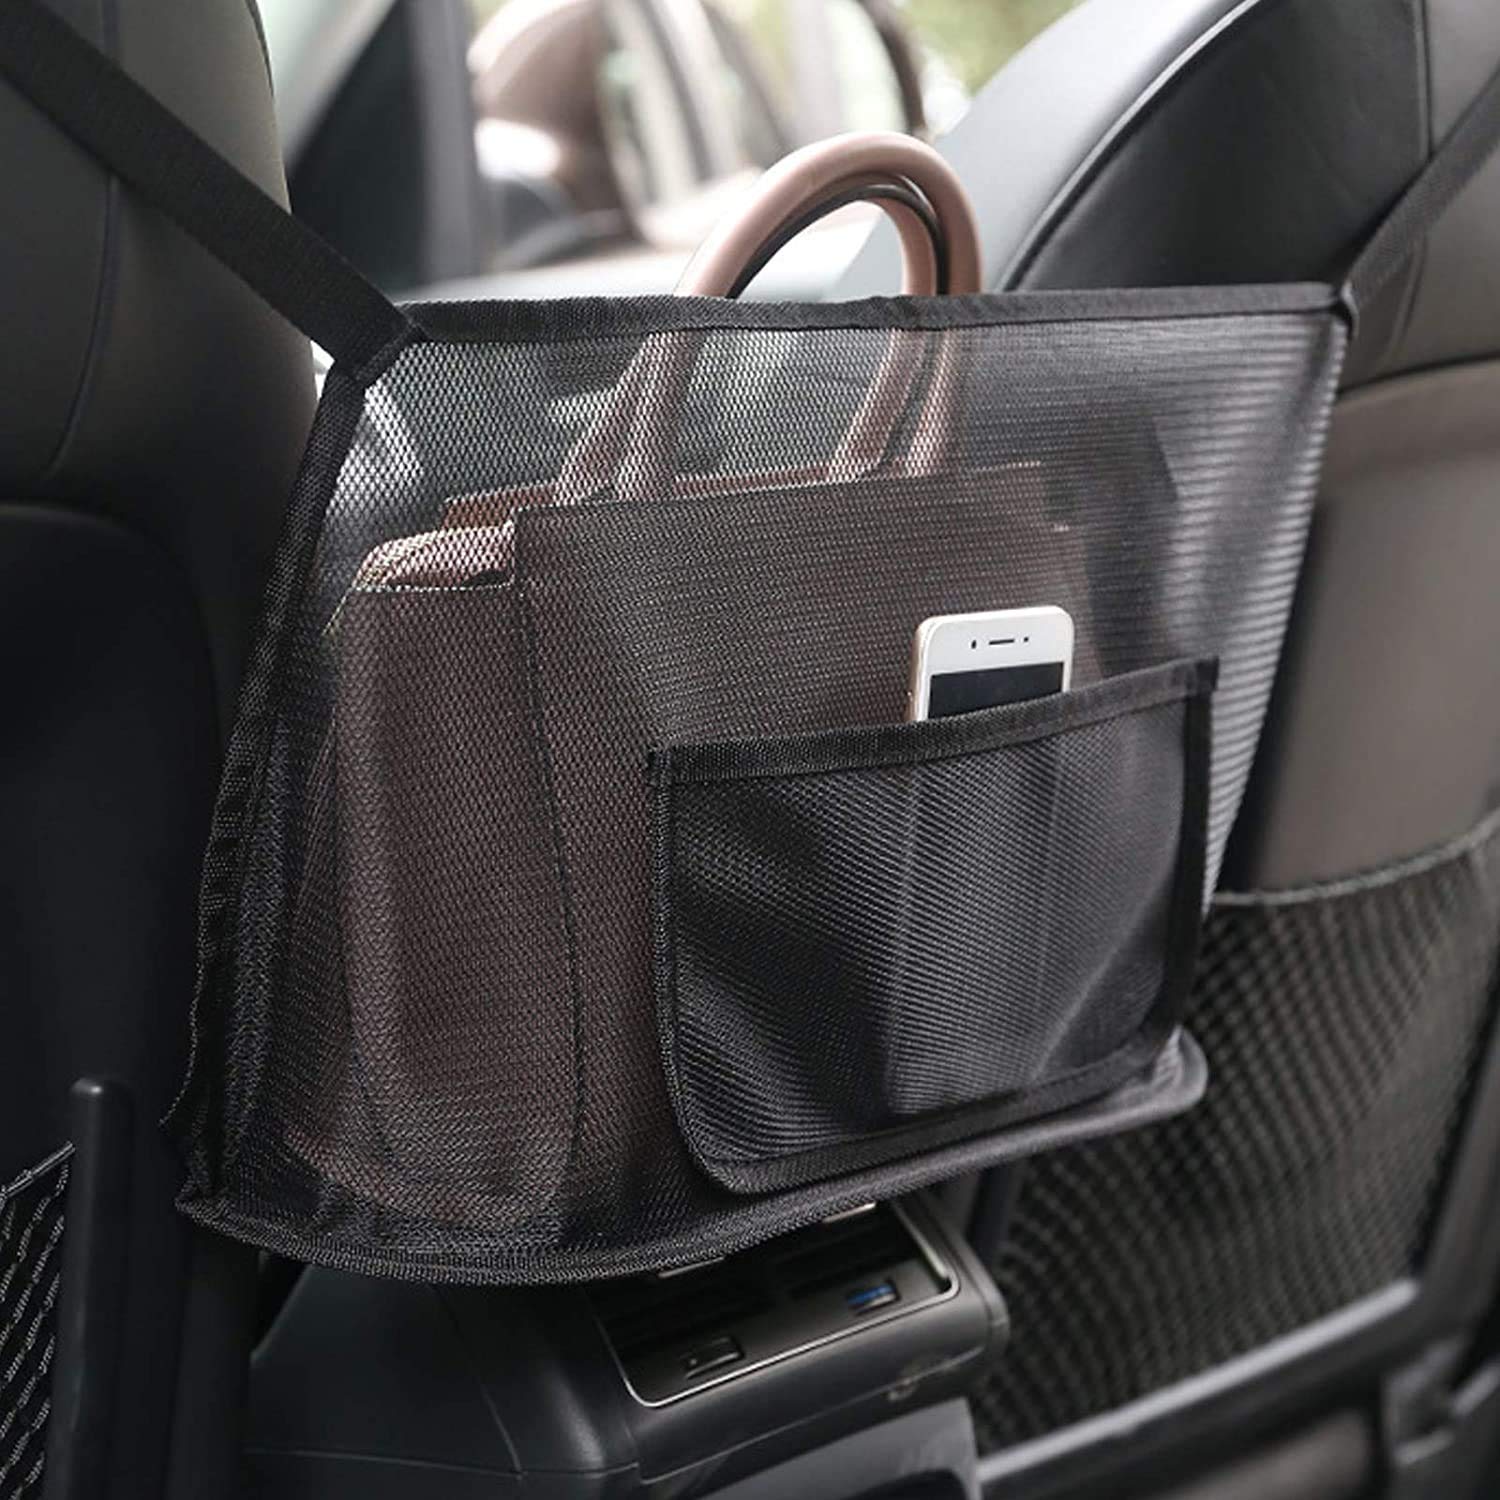 Auto-Netztasche Handtaschen, Sitz Rücken Netztasche, Car Net Pocket Handbag, Auto Holder Handtaschen, Sitzlehne Net Bag, Auto Aufbewahrungstasche von Yomiin